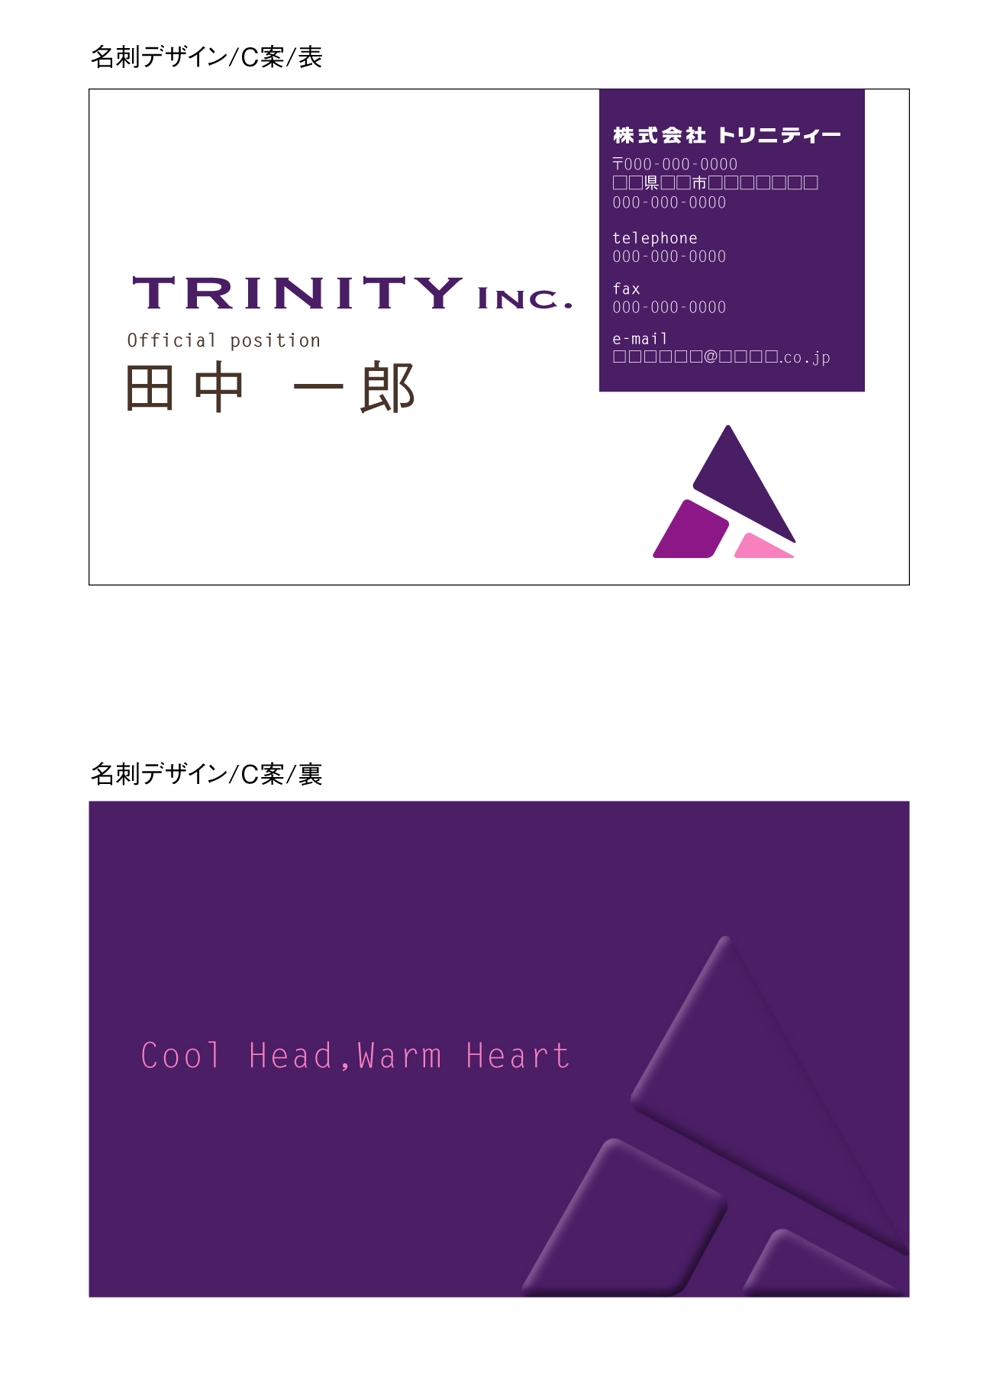 トリニティー社の名刺デザインとカラーコーディネーション